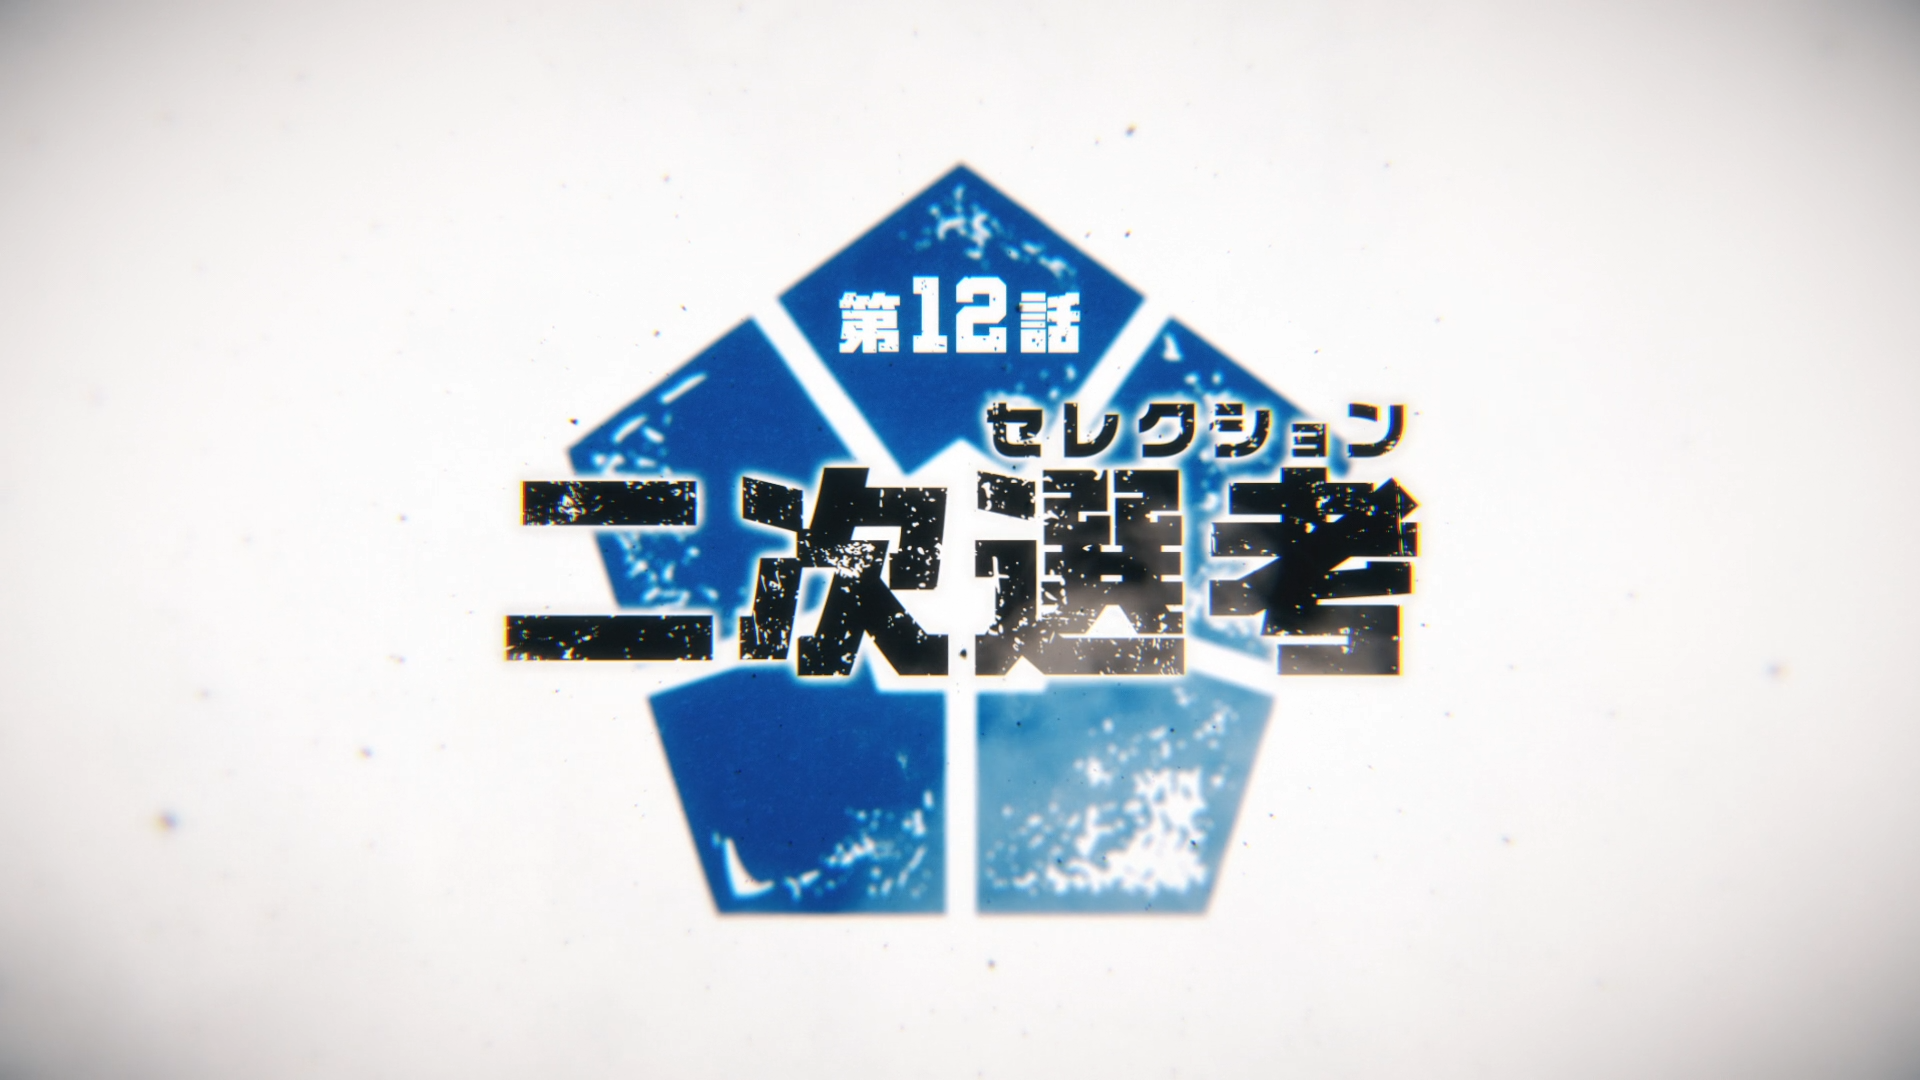 Isagi Icon - Blue Lock - Episode 12